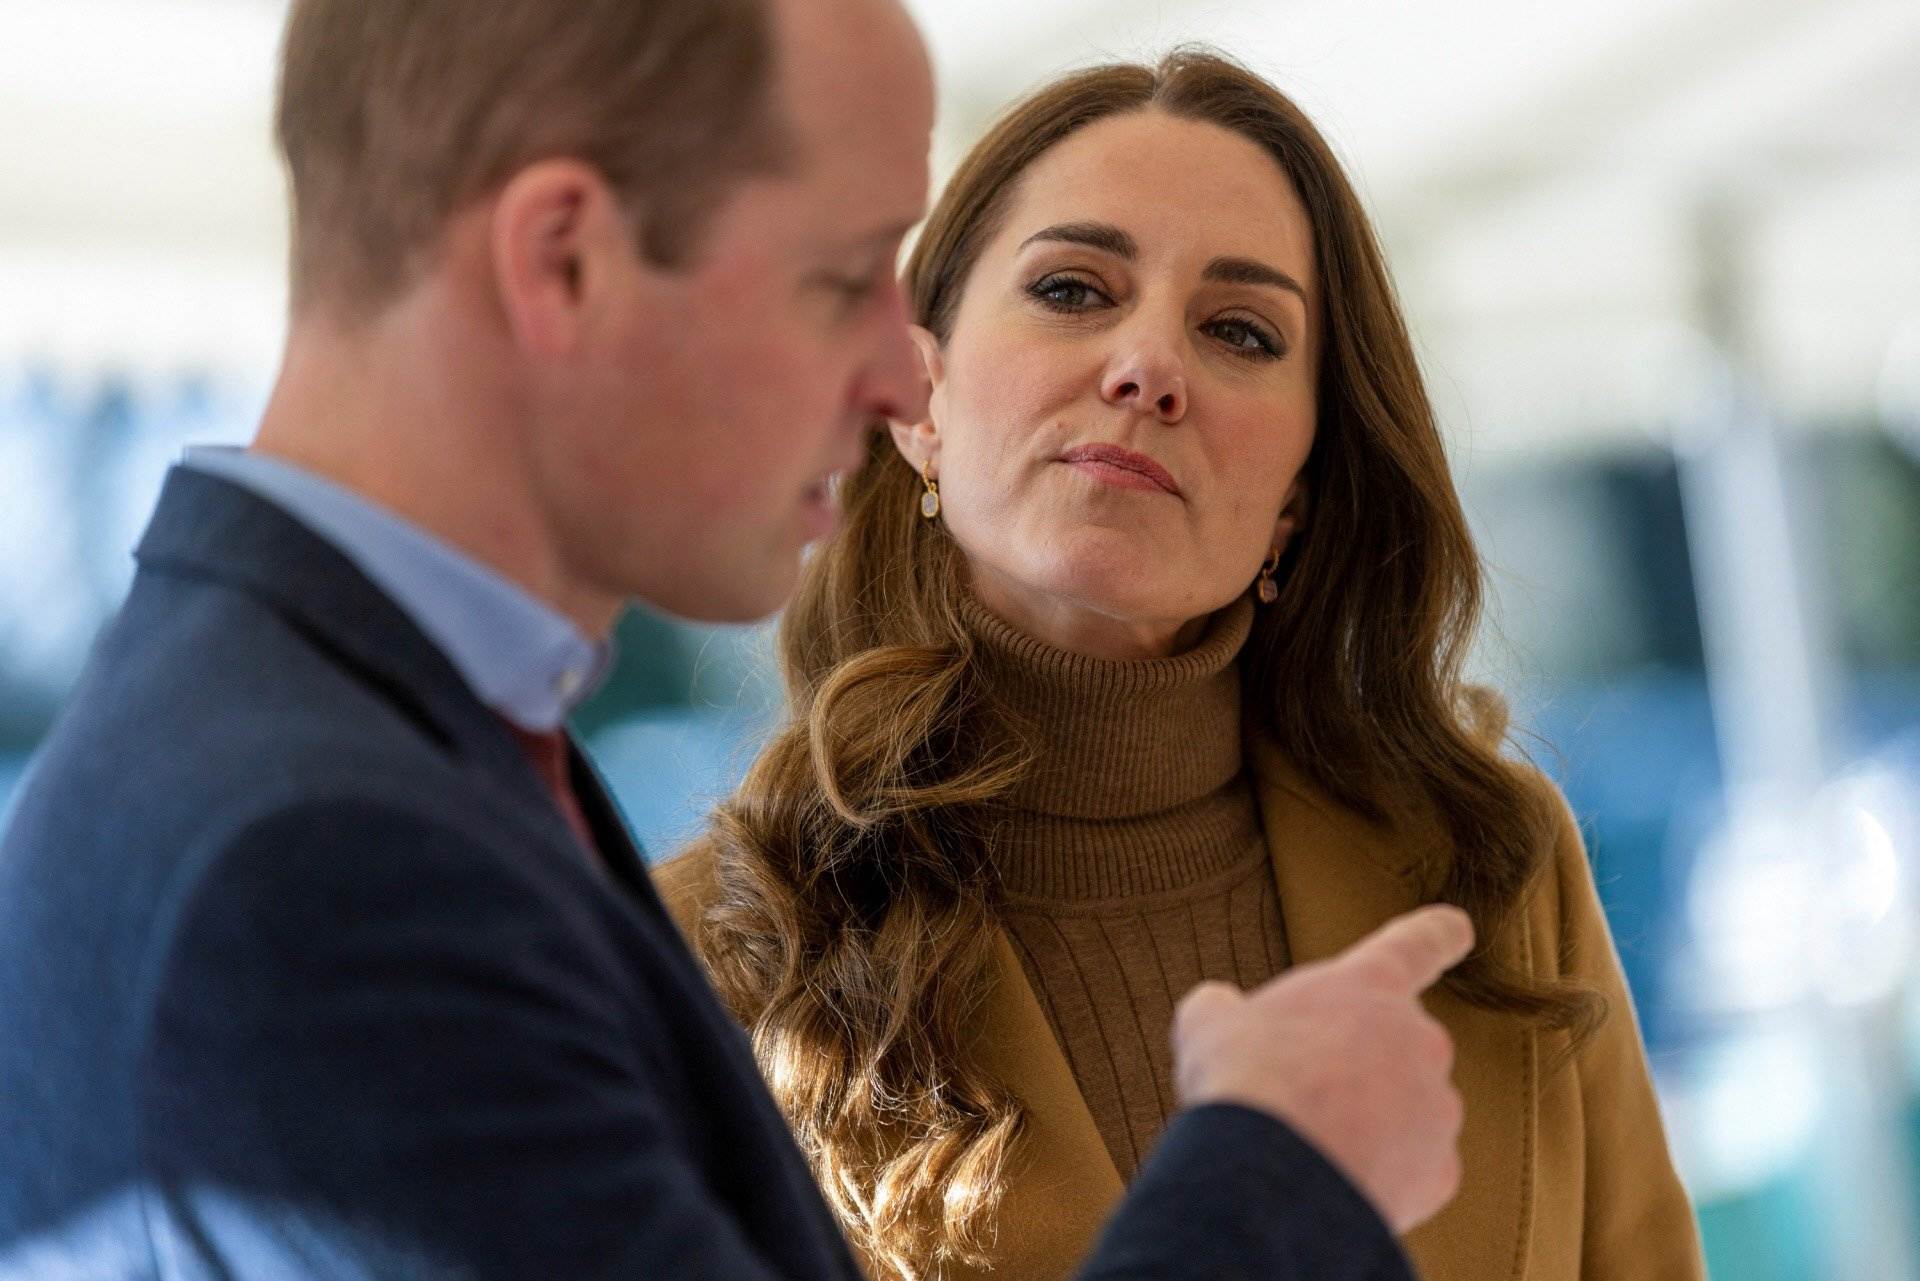 Kate Middleton consiente que el príncipe Guillermo satisfaga necesidades sexuales fuera del matrimonio